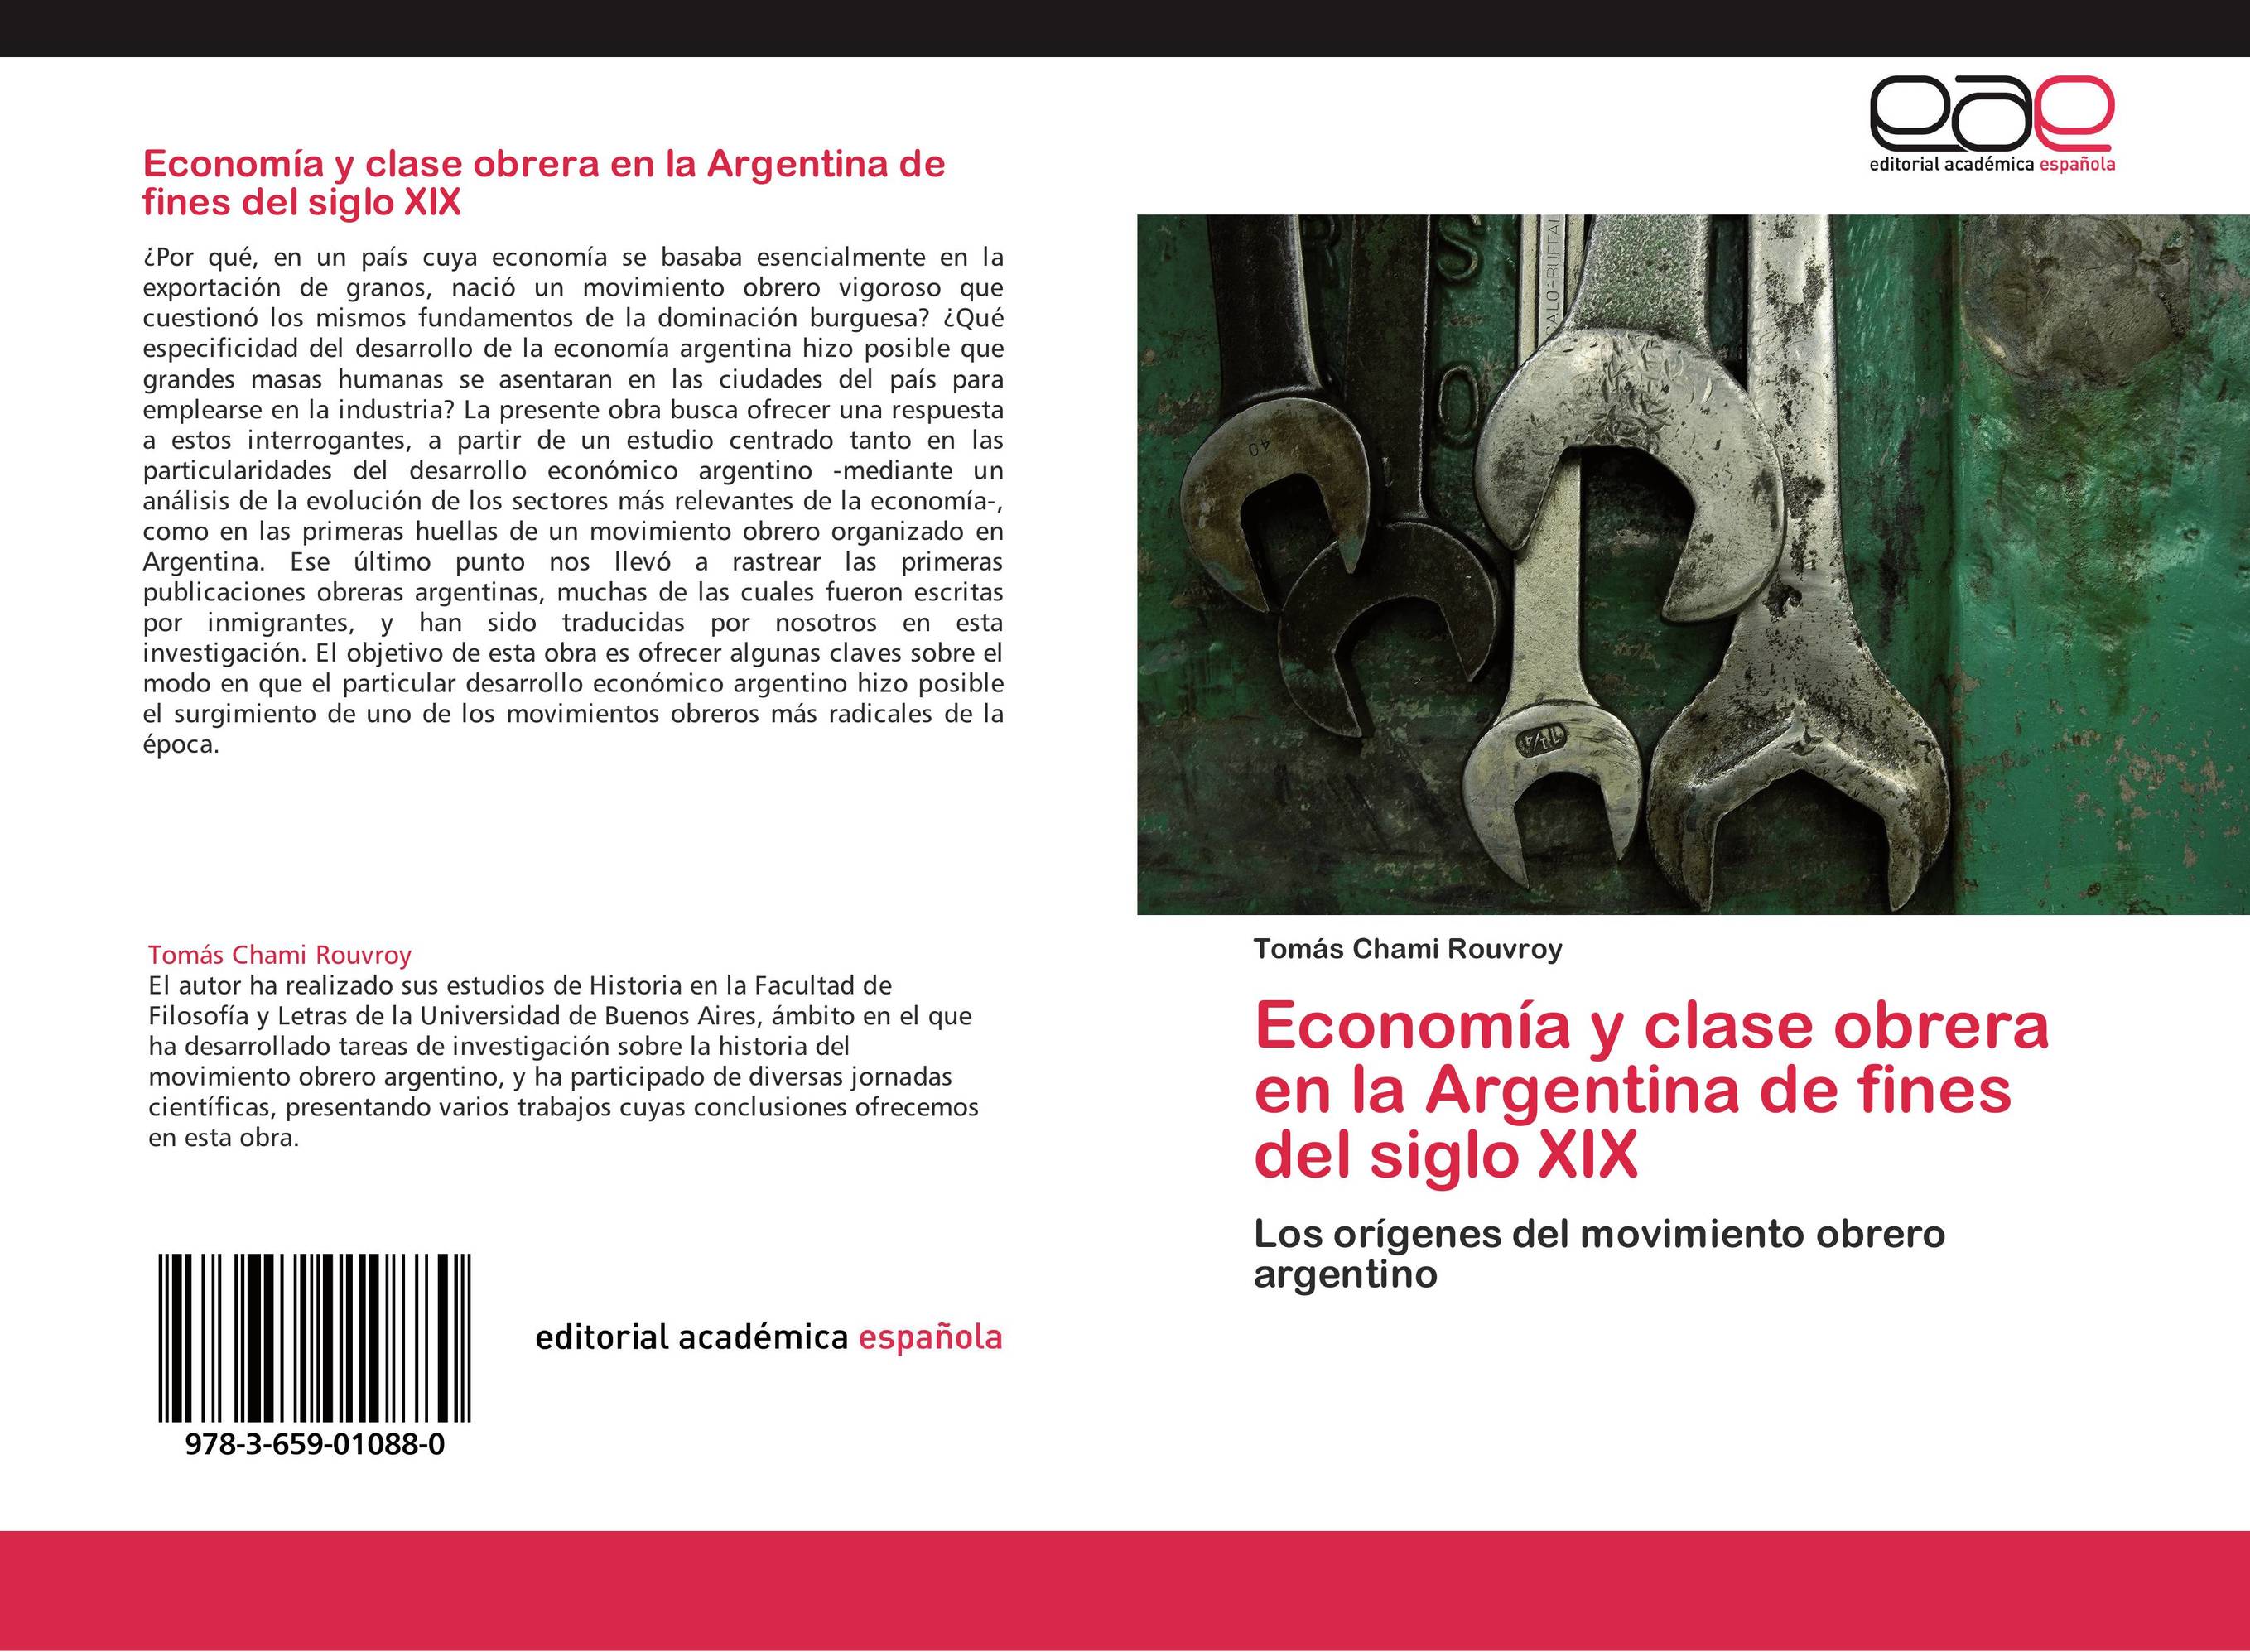 Economía y clase obrera en la Argentina de fines del siglo XIX